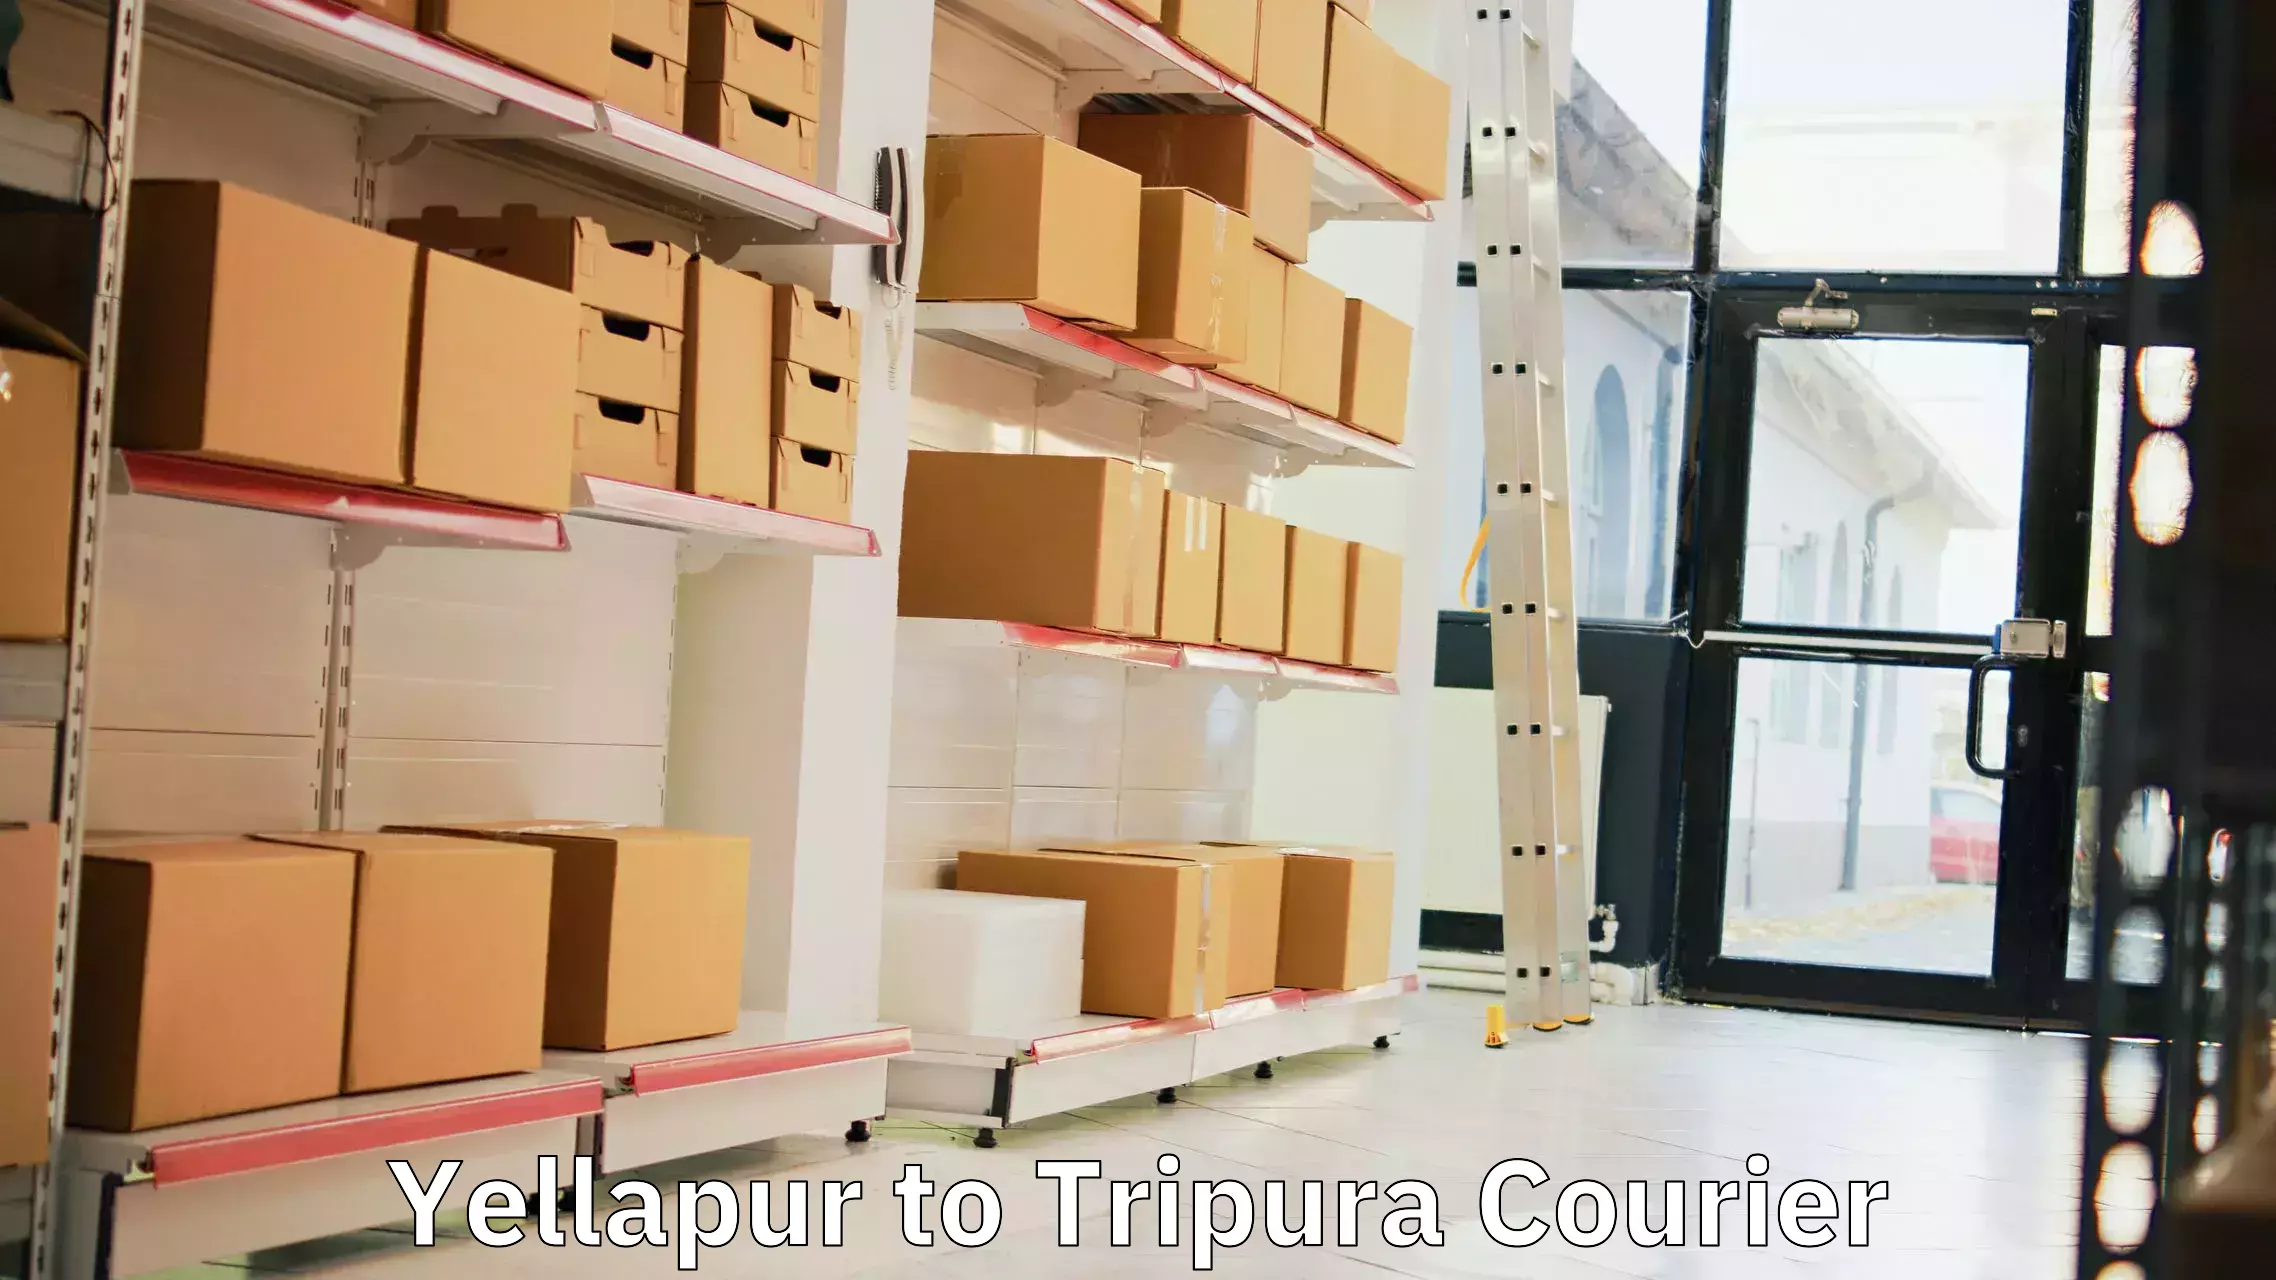 Advanced parcel tracking Yellapur to Tripura